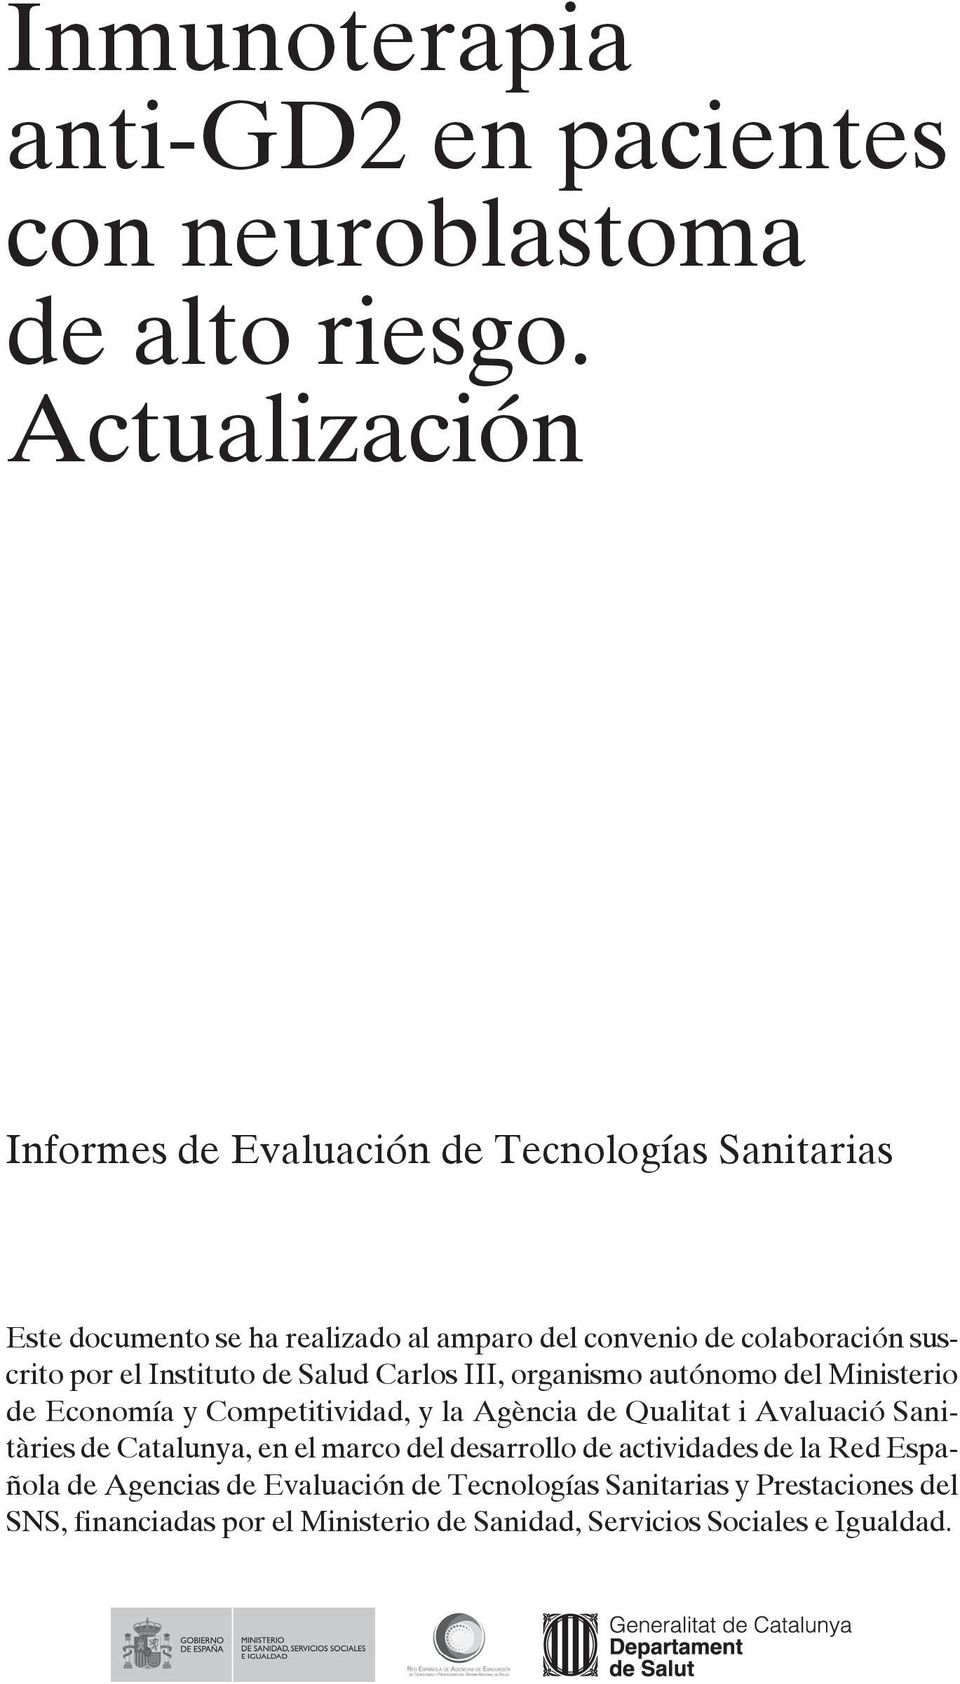 el Instituto de Salud Carlos III, organismo autónomo del Ministerio de Economía y Competitividad, y la Agència de Qualitat i Avaluació Sanitàries